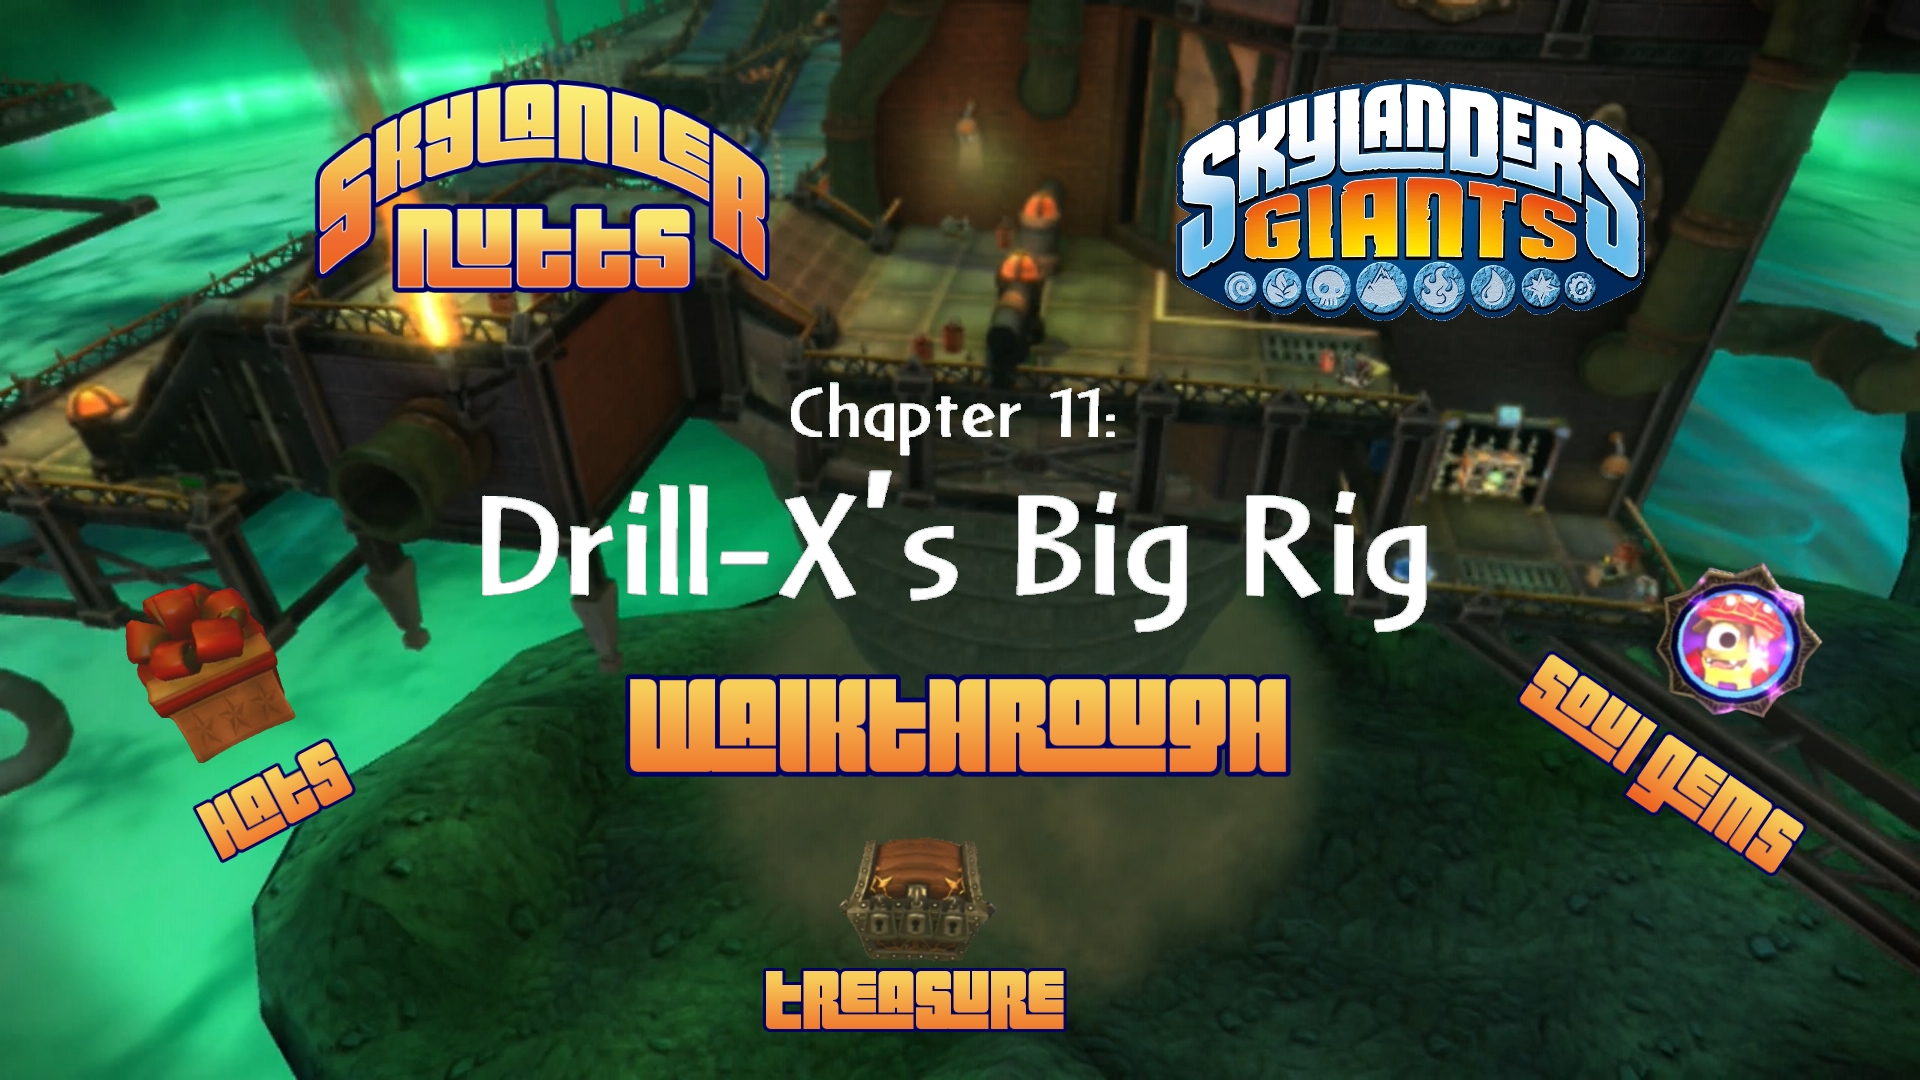 Giants Walkthrough (Ch 11 - Drill-X's Big Rig)